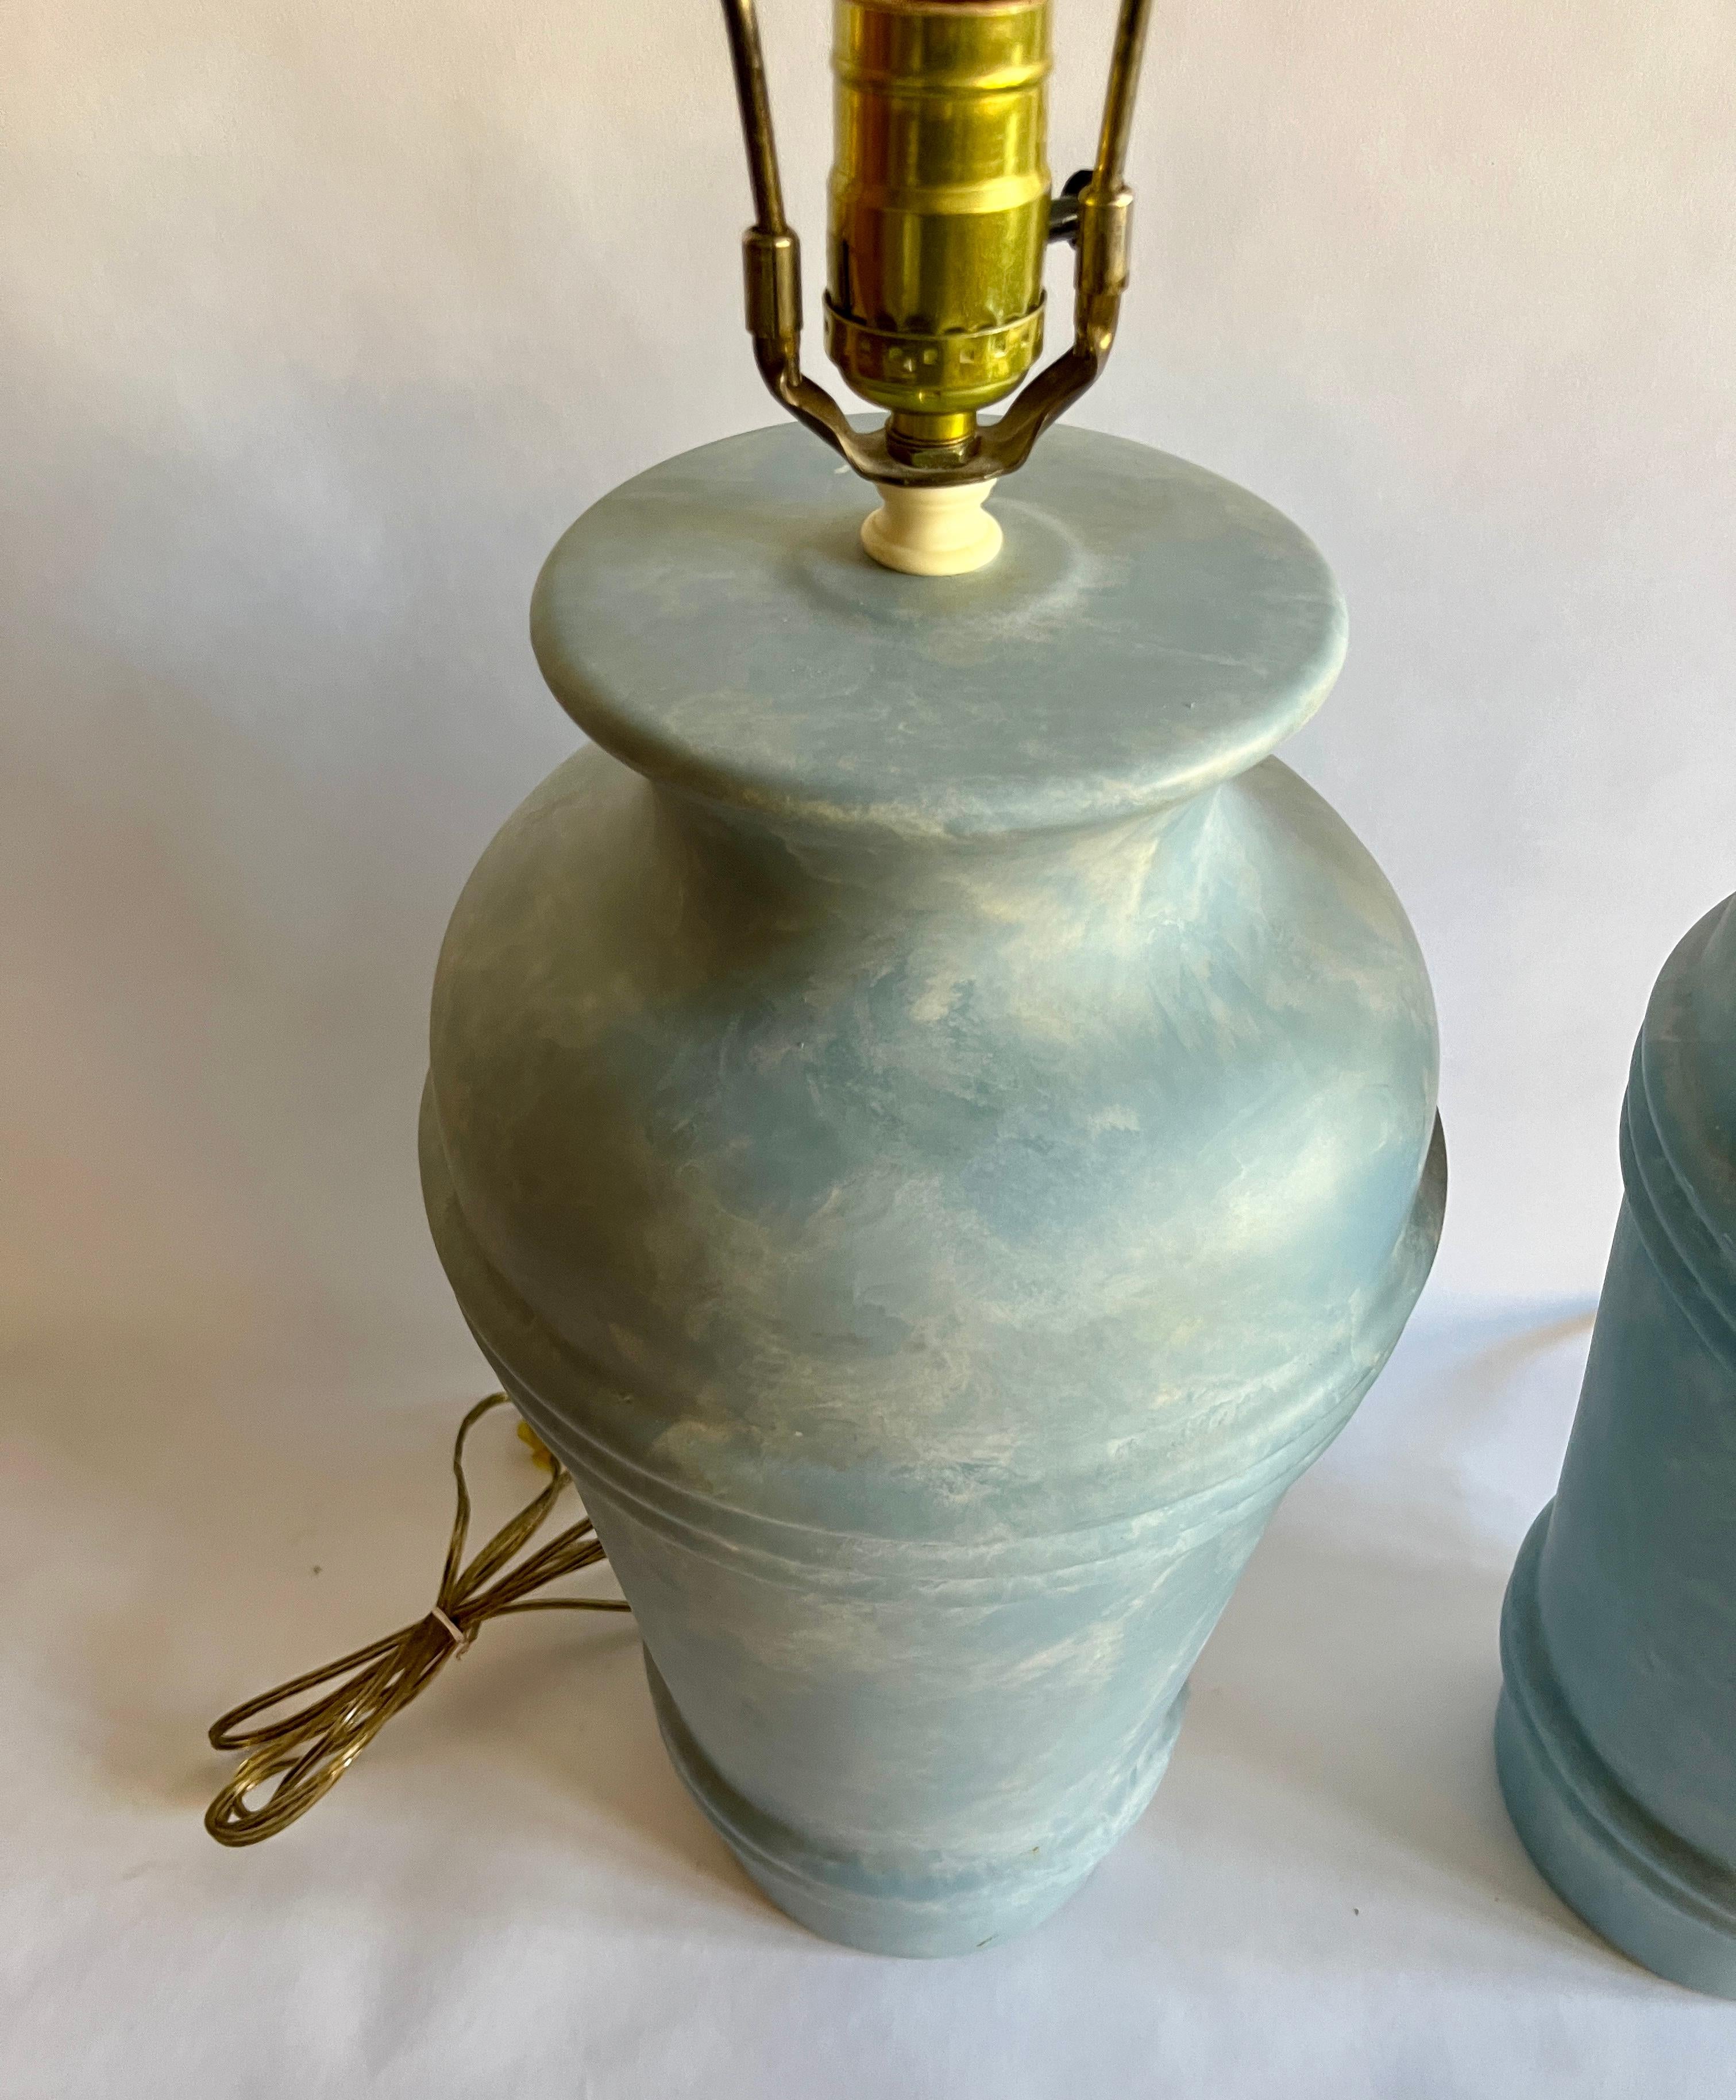 Ein Paar postmoderne Keramik-Tischlampen von Regal China mit zwei Reihen gerippter Bänder und gewirbelter hellblauer Glasur. Originale Verkabelung in Ordnung. Einschließlich Harfen. Keine Lampenschirme enthalten.

Jeder misst 18